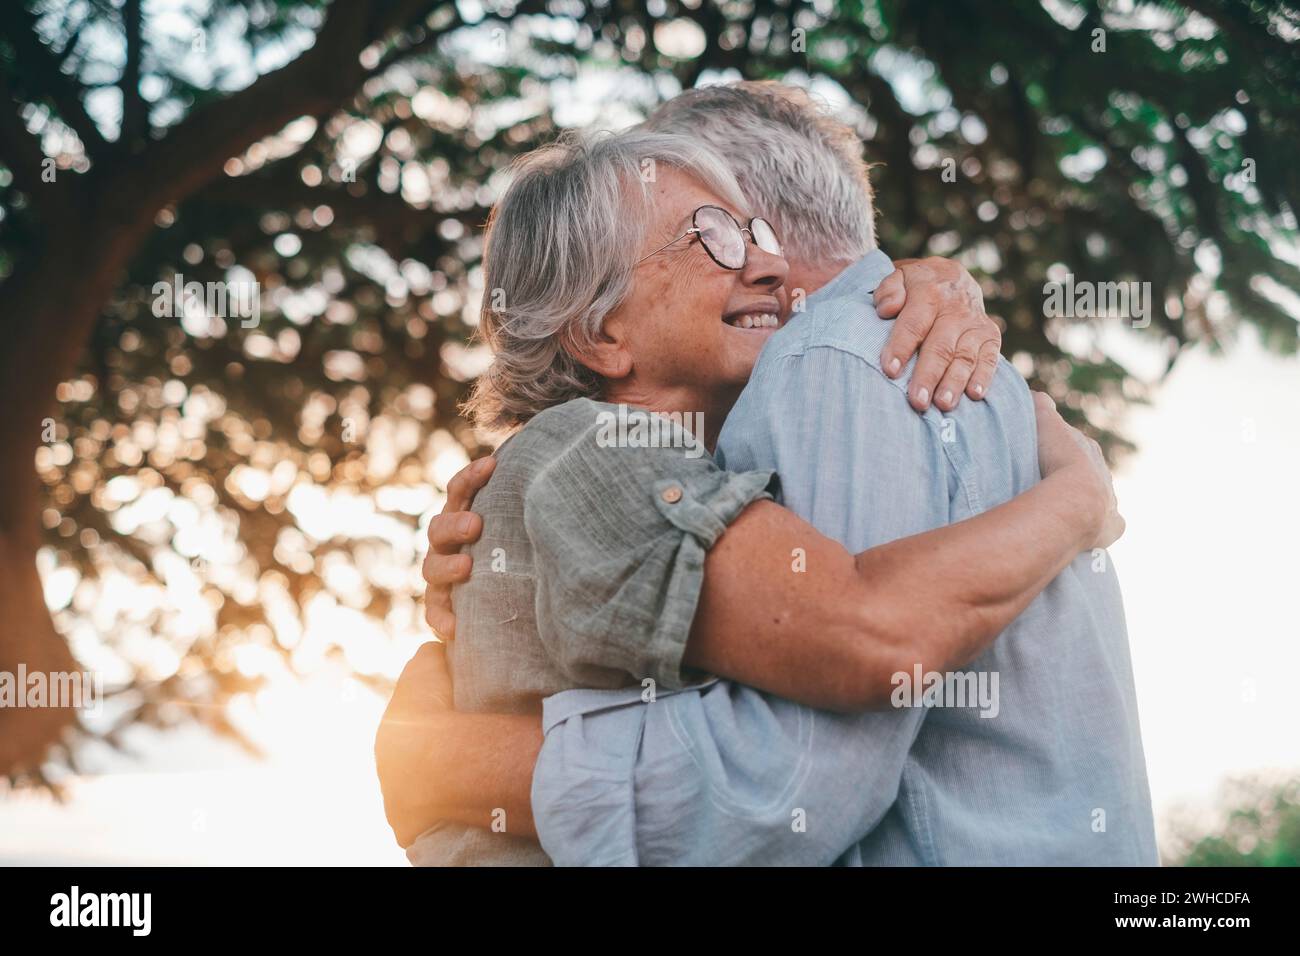 Kopfaufnahme Nahaufnahme Porträt glückliche grauhaarige Frau mittleren Alters, die sich an einen lächelnden älteren Ehemann kuschelt und einen zarten Moment im Park genießt. Ein liebevolles, altes Familienpaar, das sich umschließt, glücklich fühlt. Stockfoto